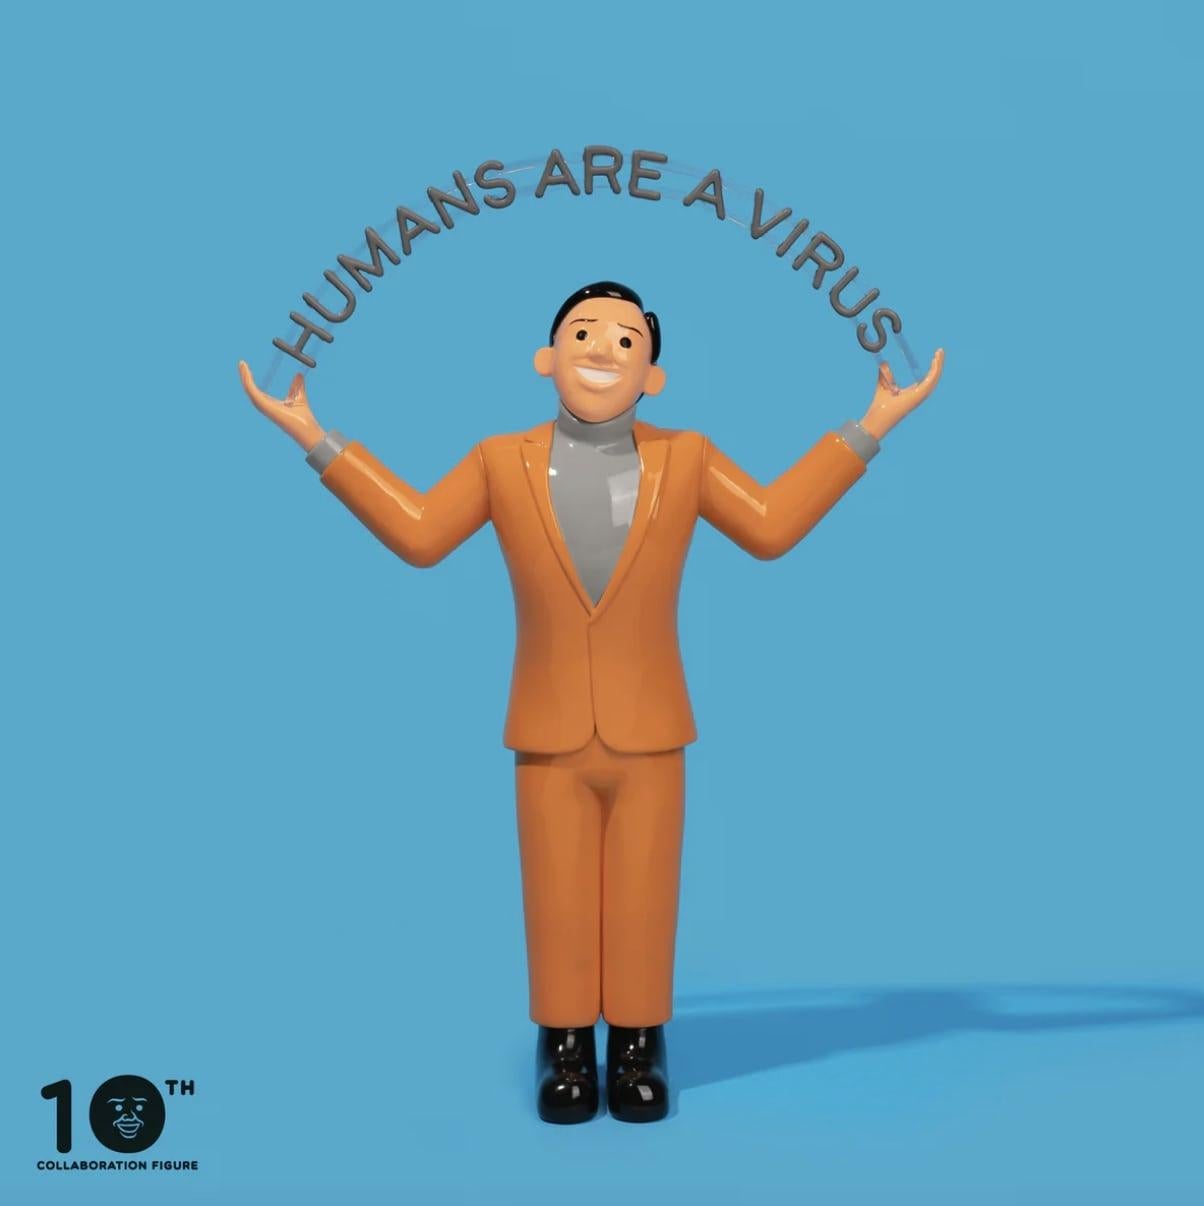 Joan Cornellà  Figurative Sculpture – Menschen sind ein Virus